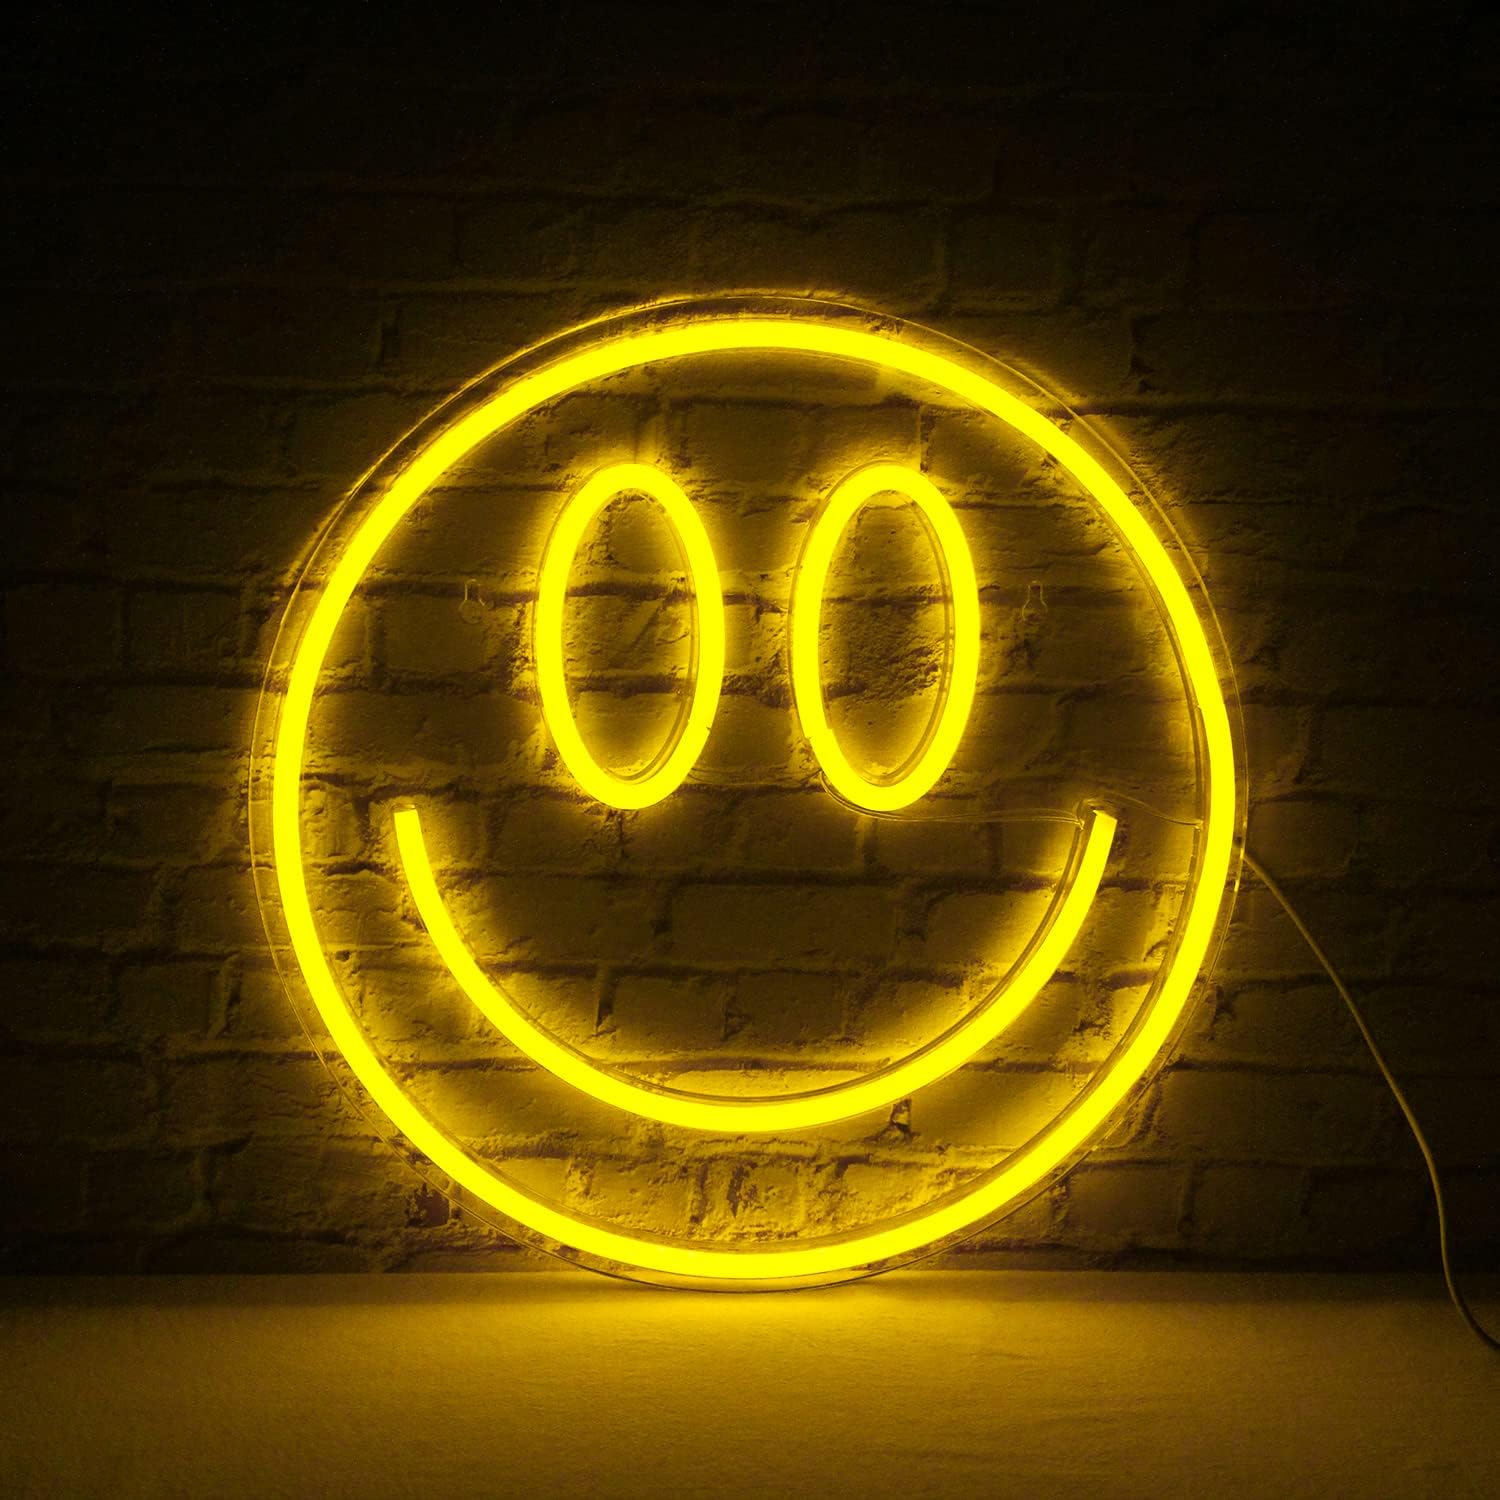 Smiley φωτεινή επιγραφή LED στον τοίχο